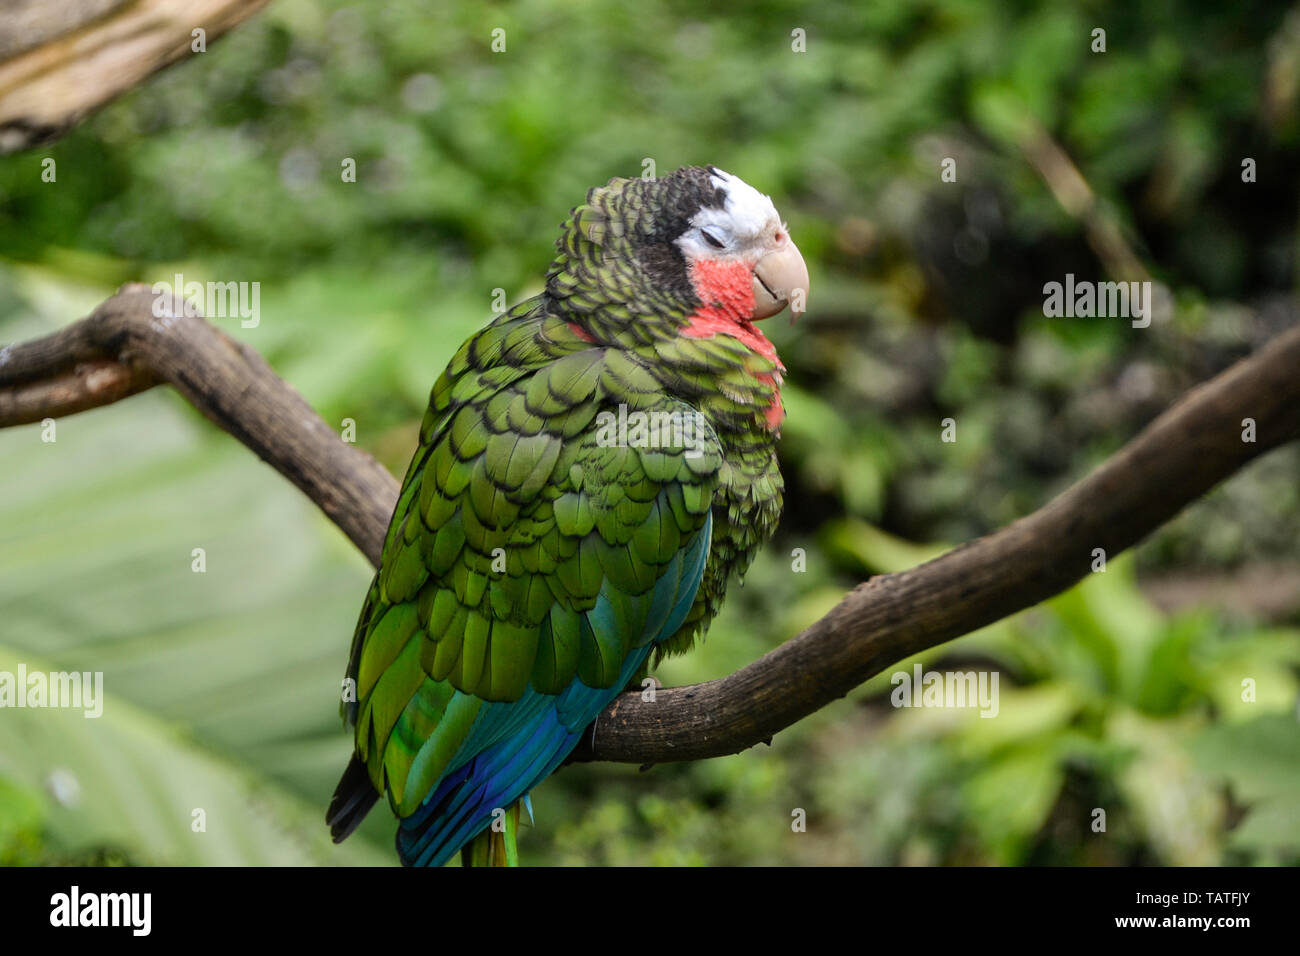 Sittacus è un genio del Caribbean pappagalli nella sottofamiglia Psittacinae il pappagallo verde. La foto è stata scattata nel giardino zoologico de Guadalupa Karibik. Foto Stock